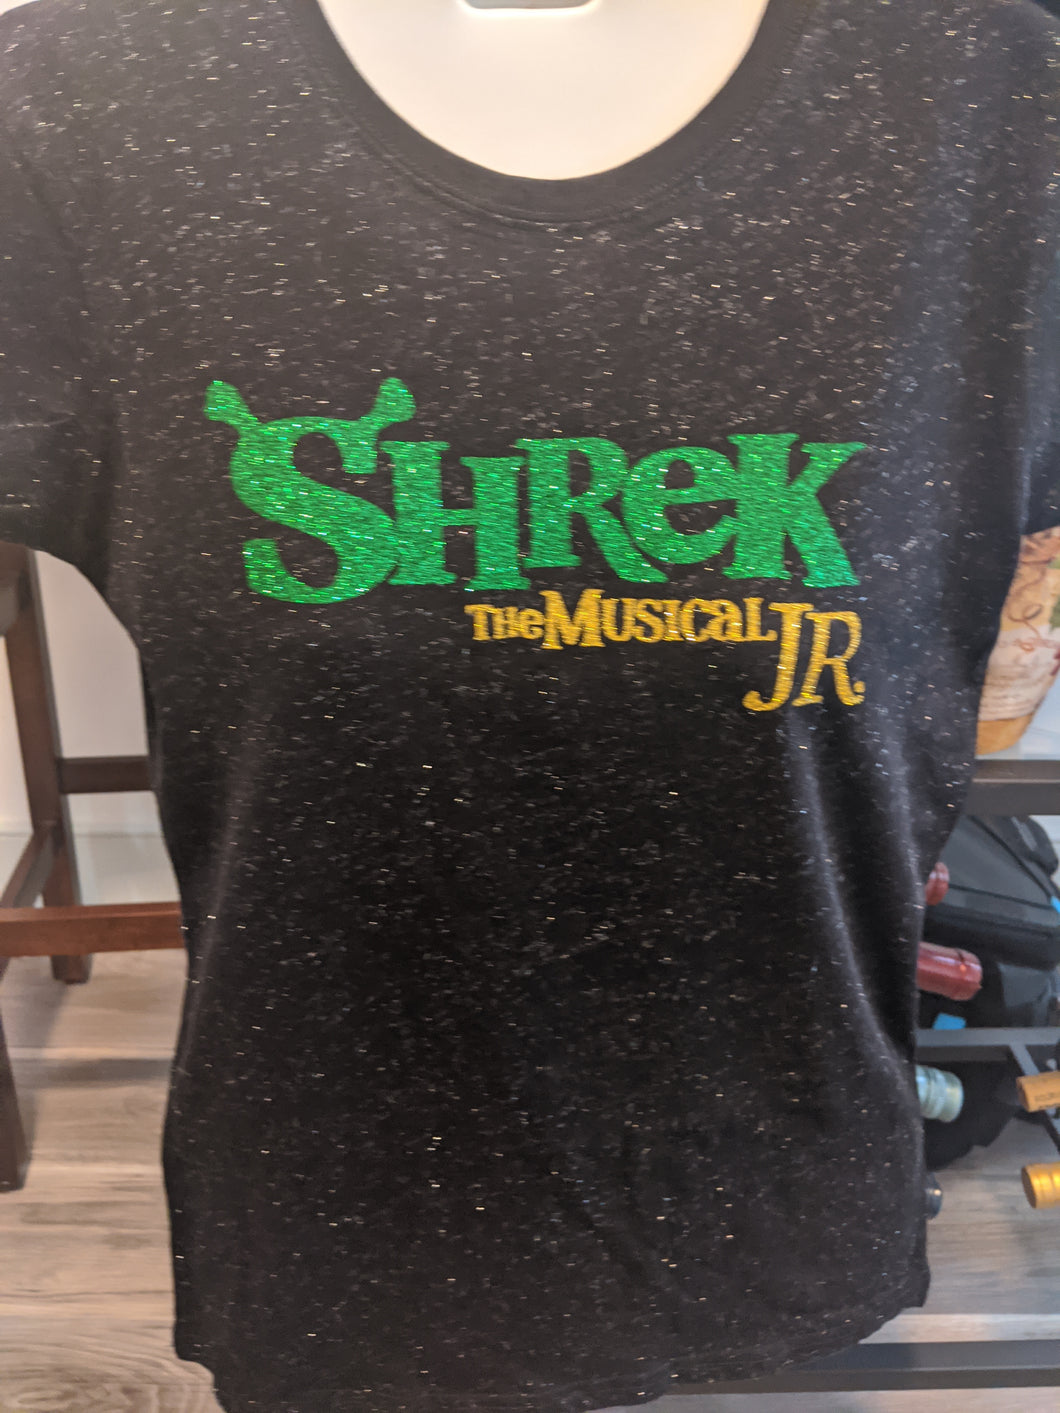 Shrek Glitter Shirt